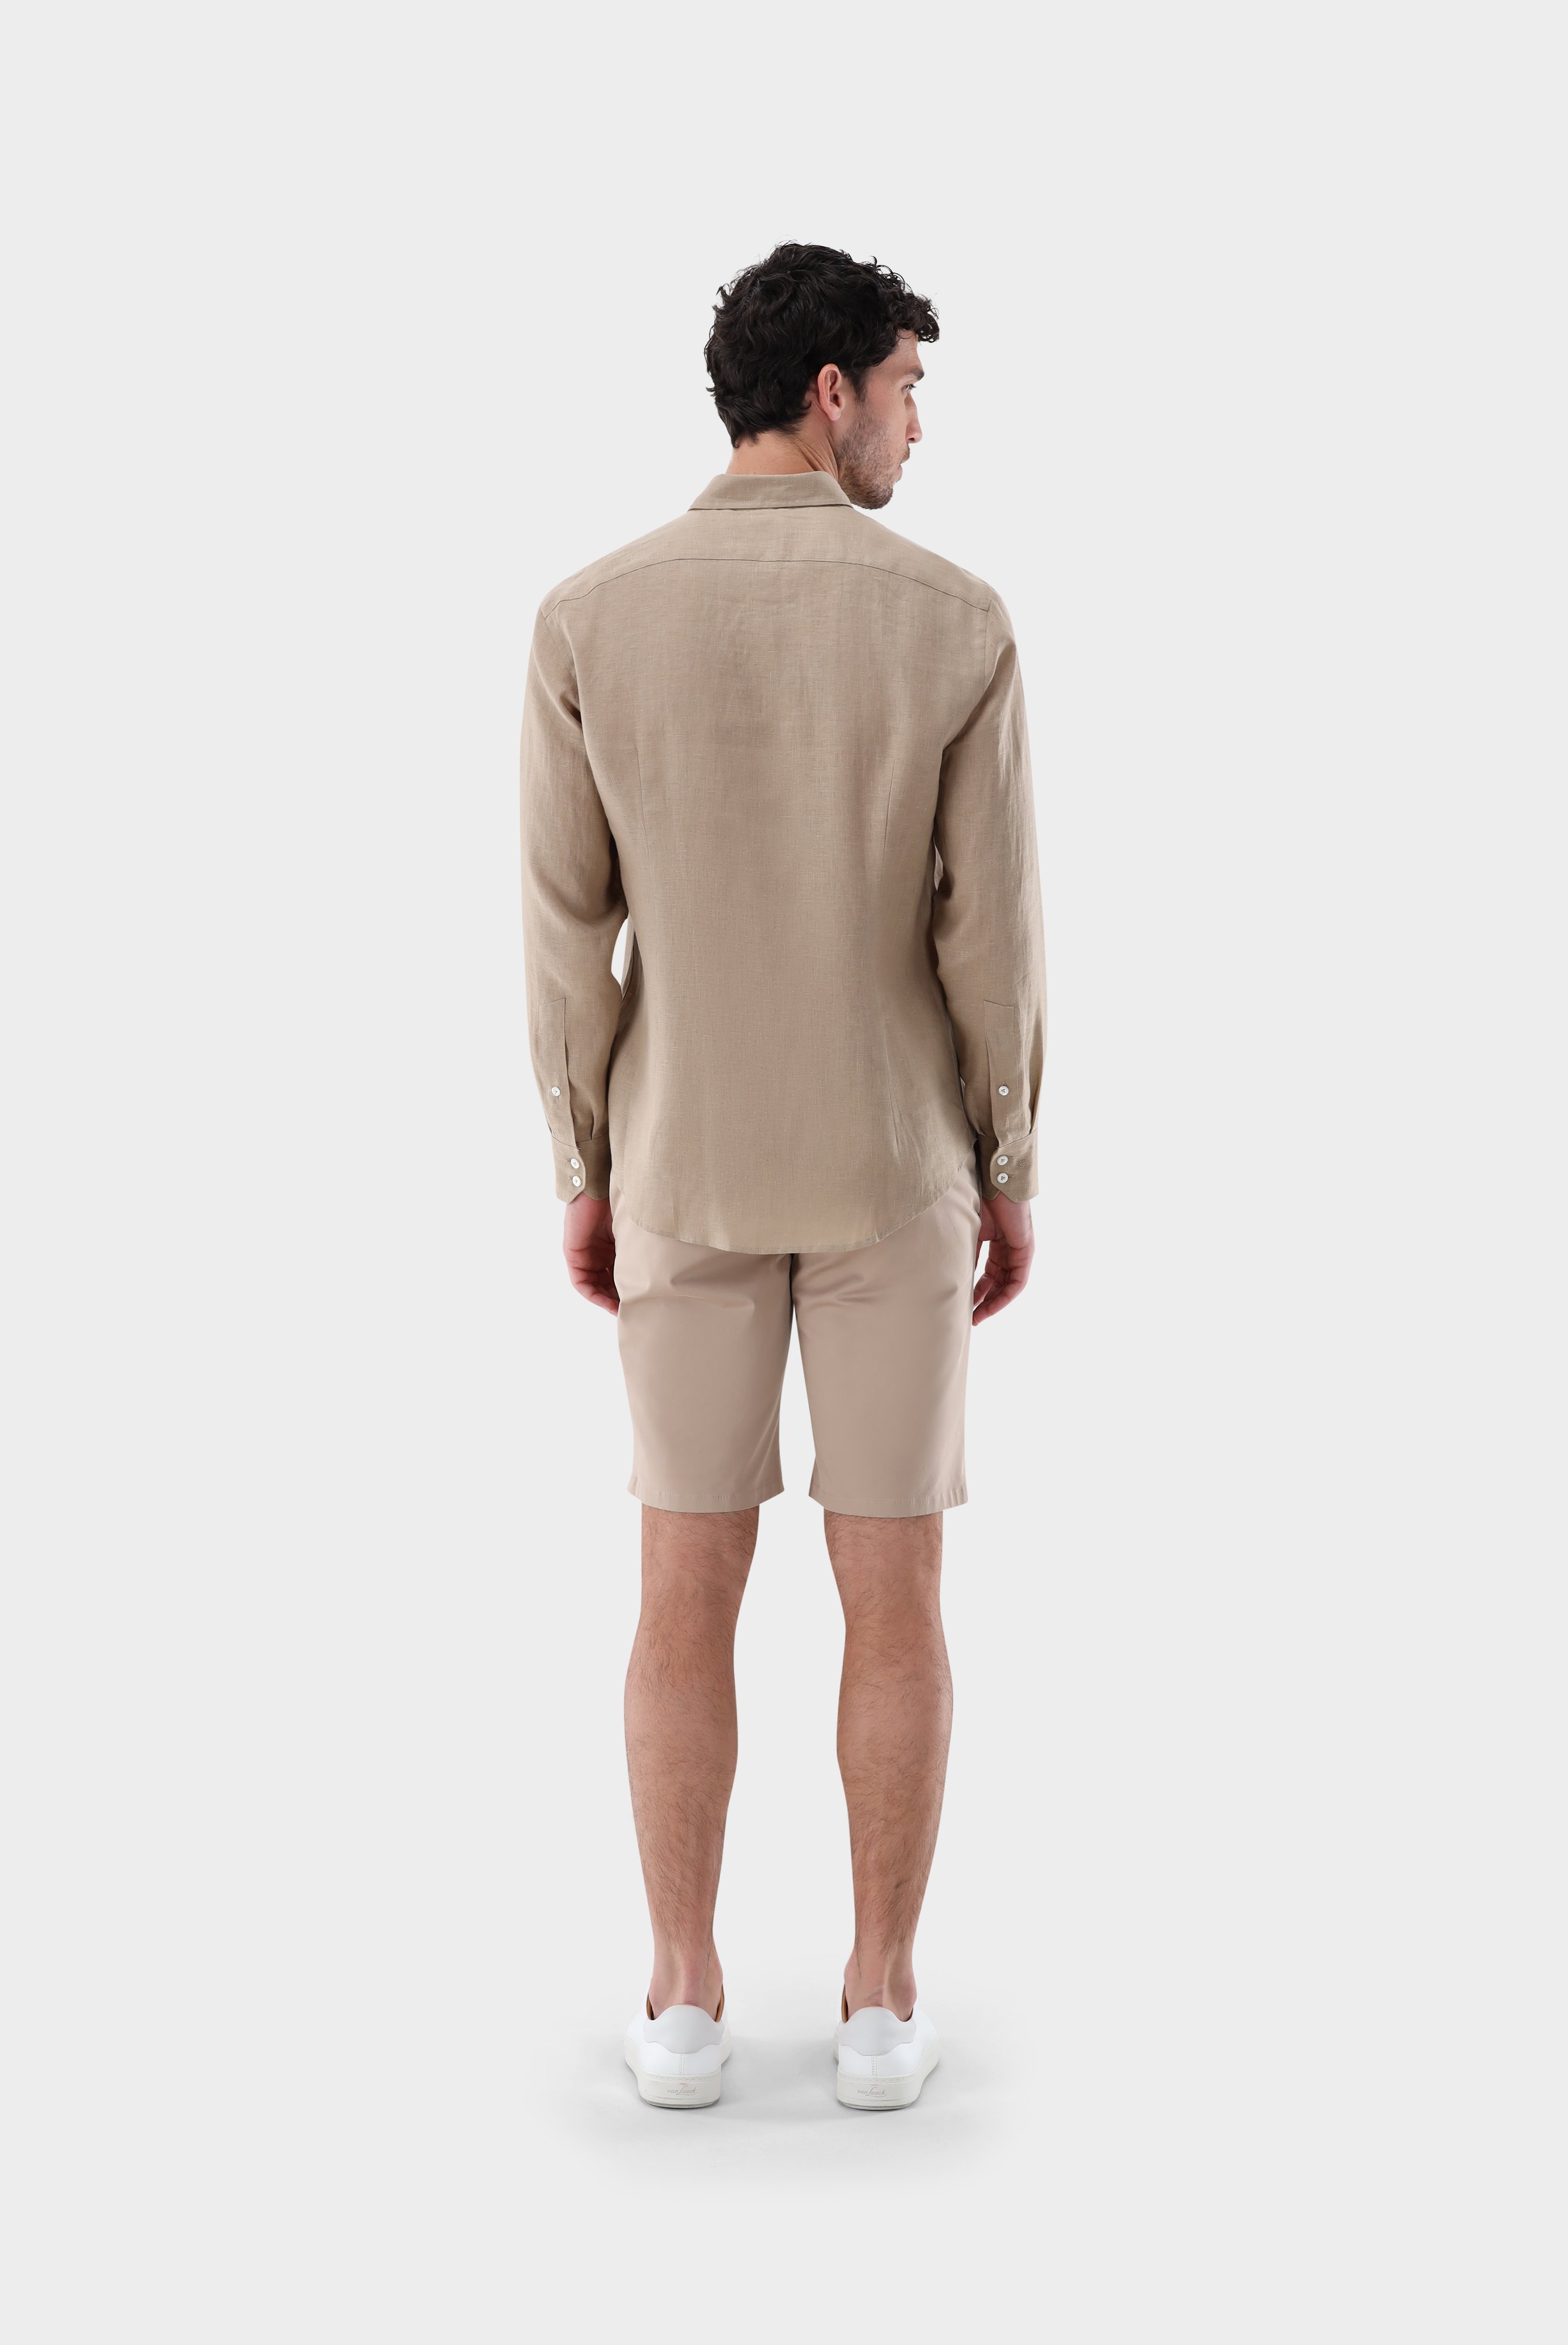 Casual Hemden+Leinenhemd mit Button-Down Kragen Tailor Fit+20.2013.9V.150555.130.38